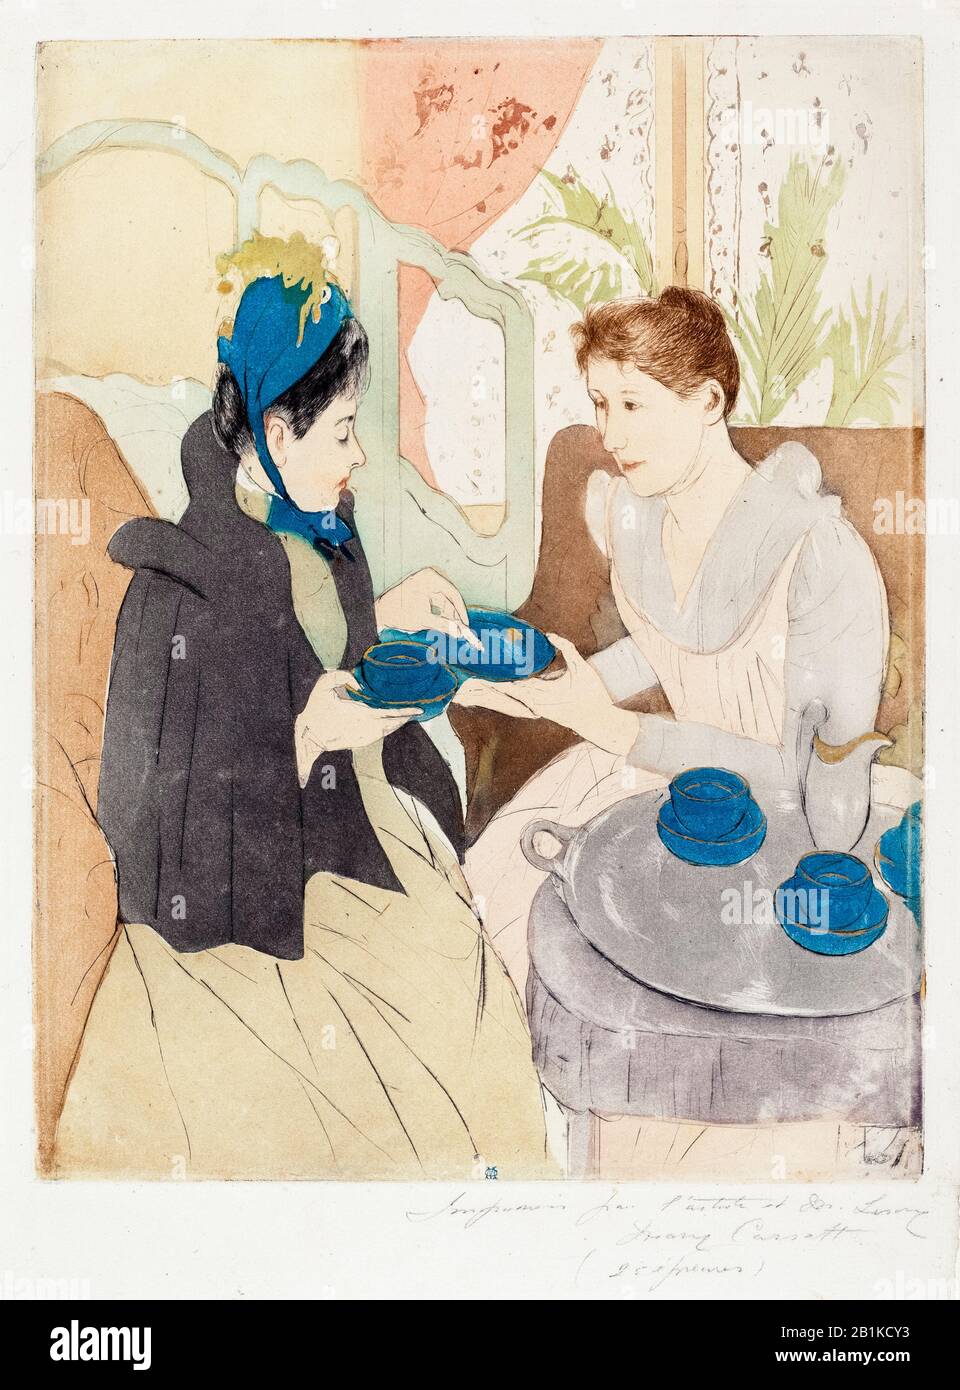 Mary Cassatt, festa del tè Pomeridiano, stampa a secco, 1890-1891 Foto Stock